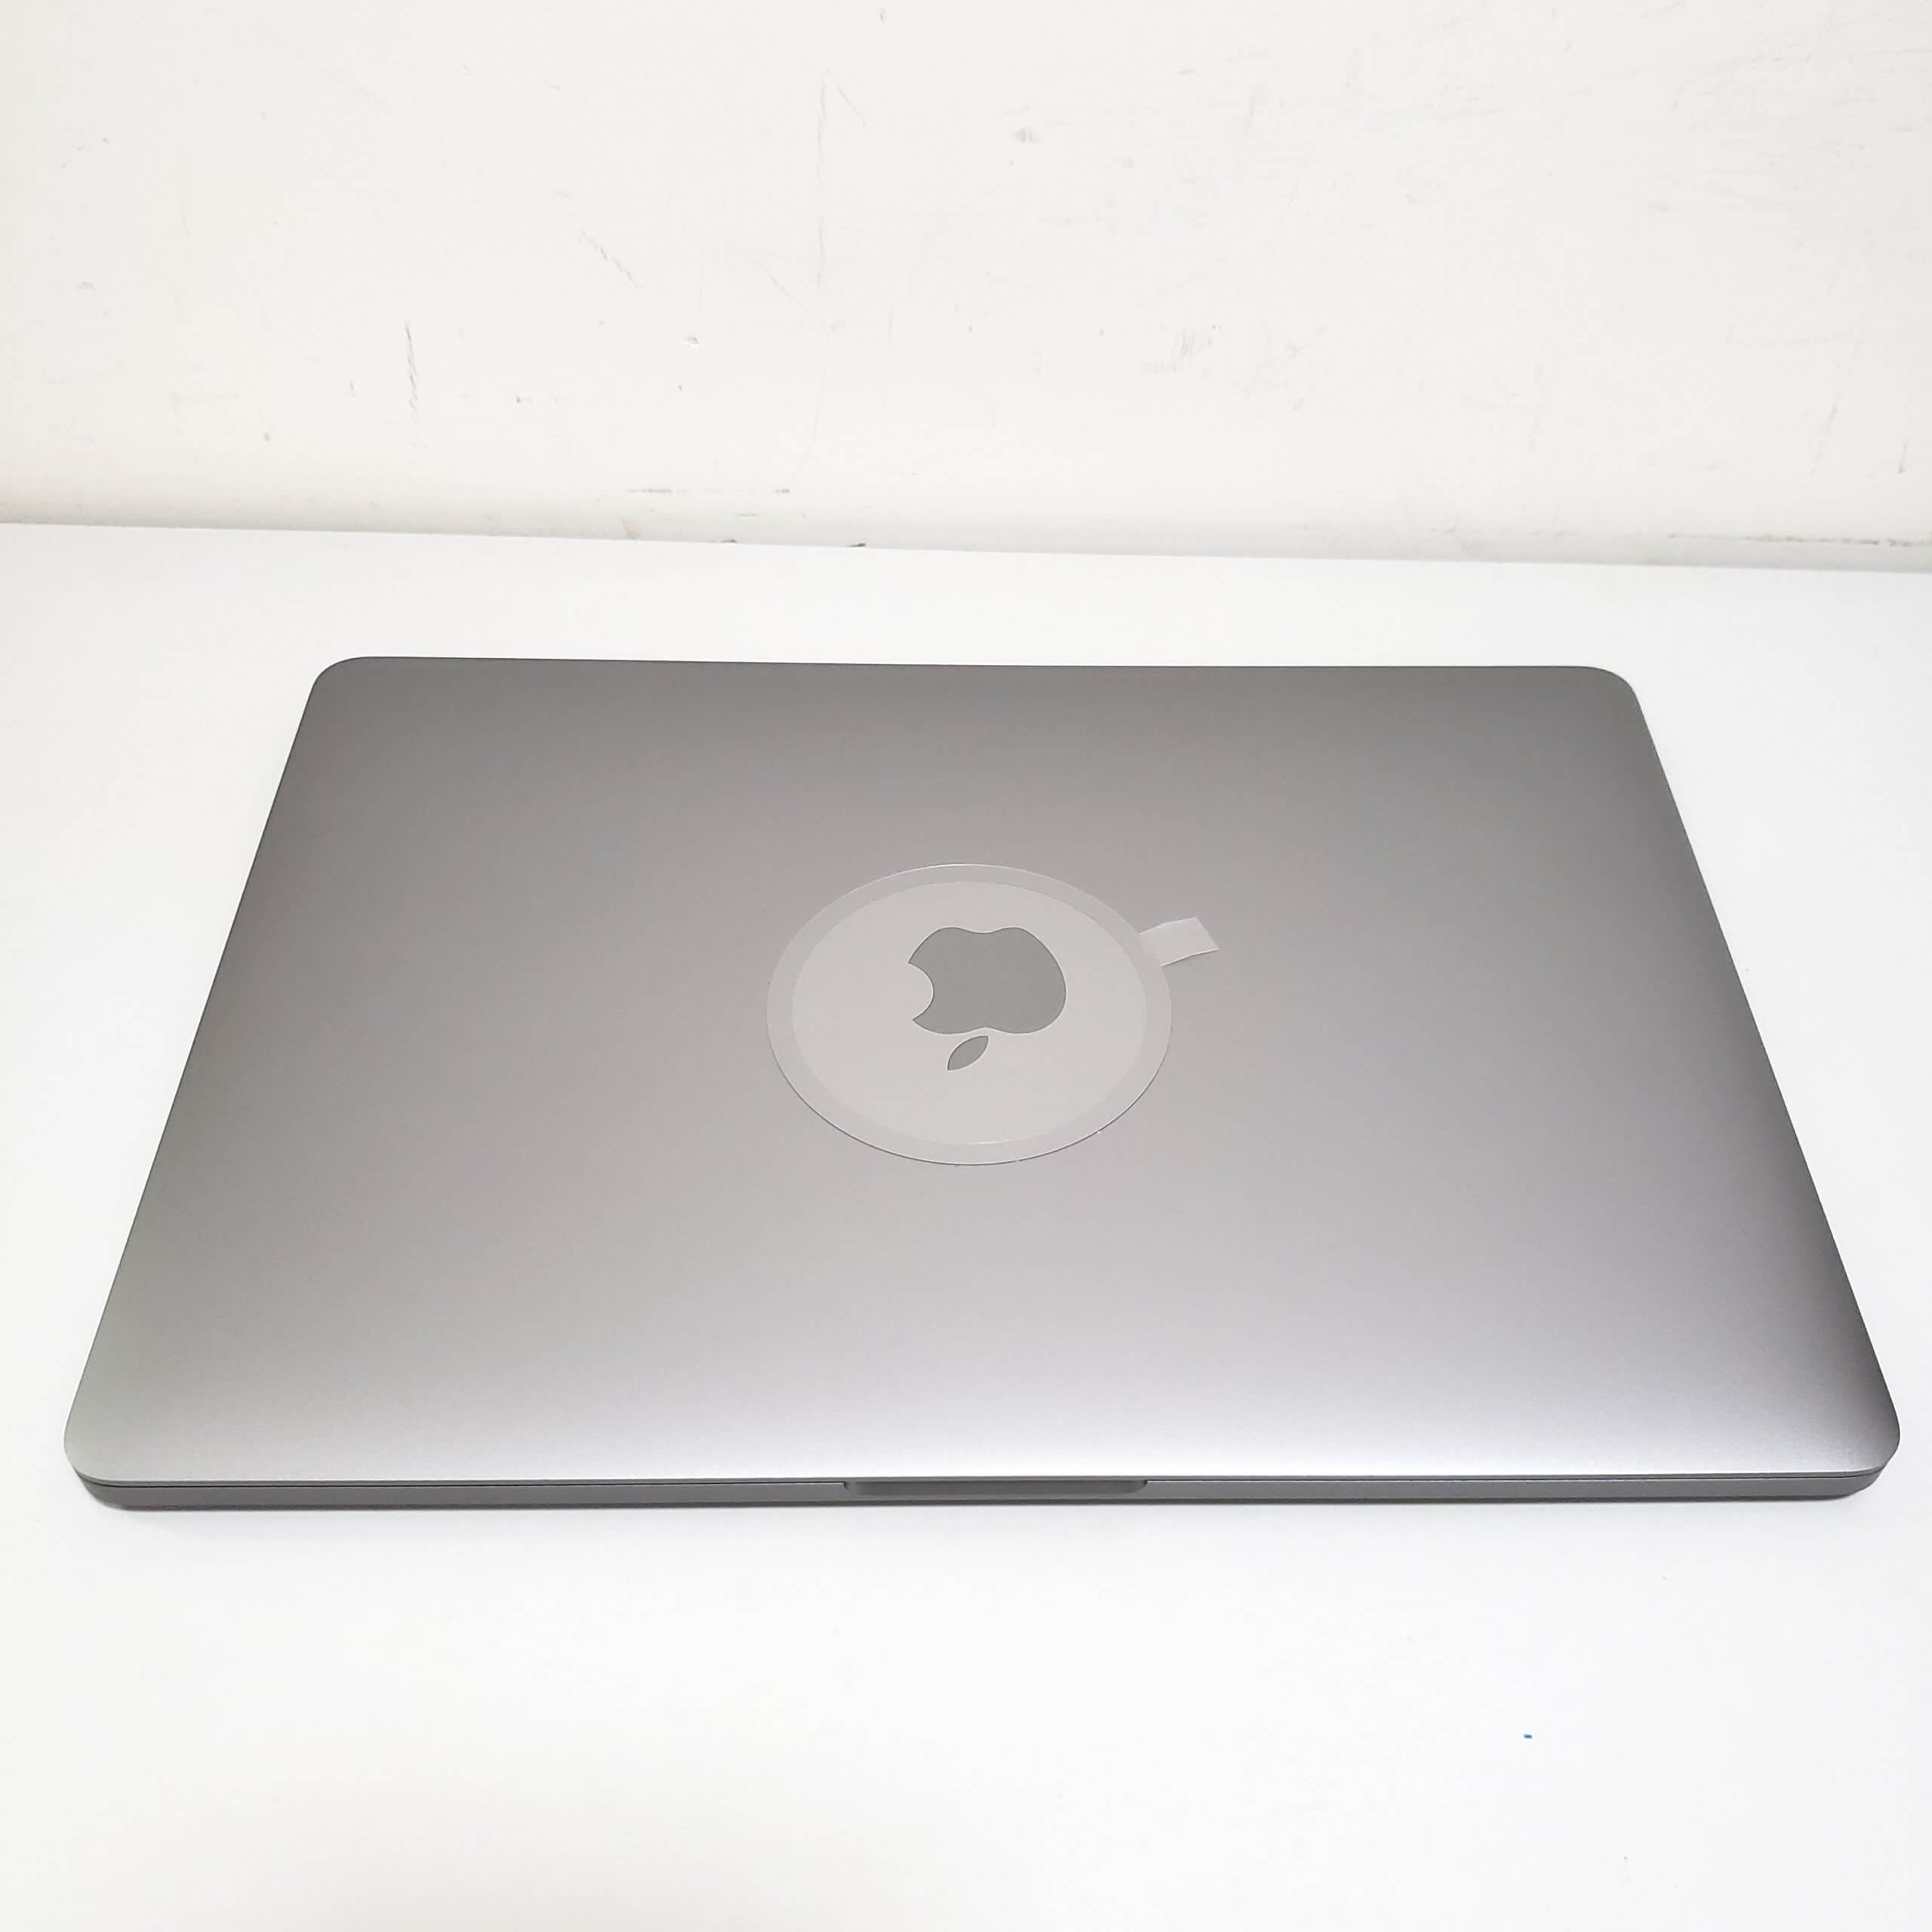 出售 Macbook pro 13" 2017 touch bar i5 8G 256G SSD (13/9已在apple換左全新Mon keyboard,電池) - Johnnys computer shop